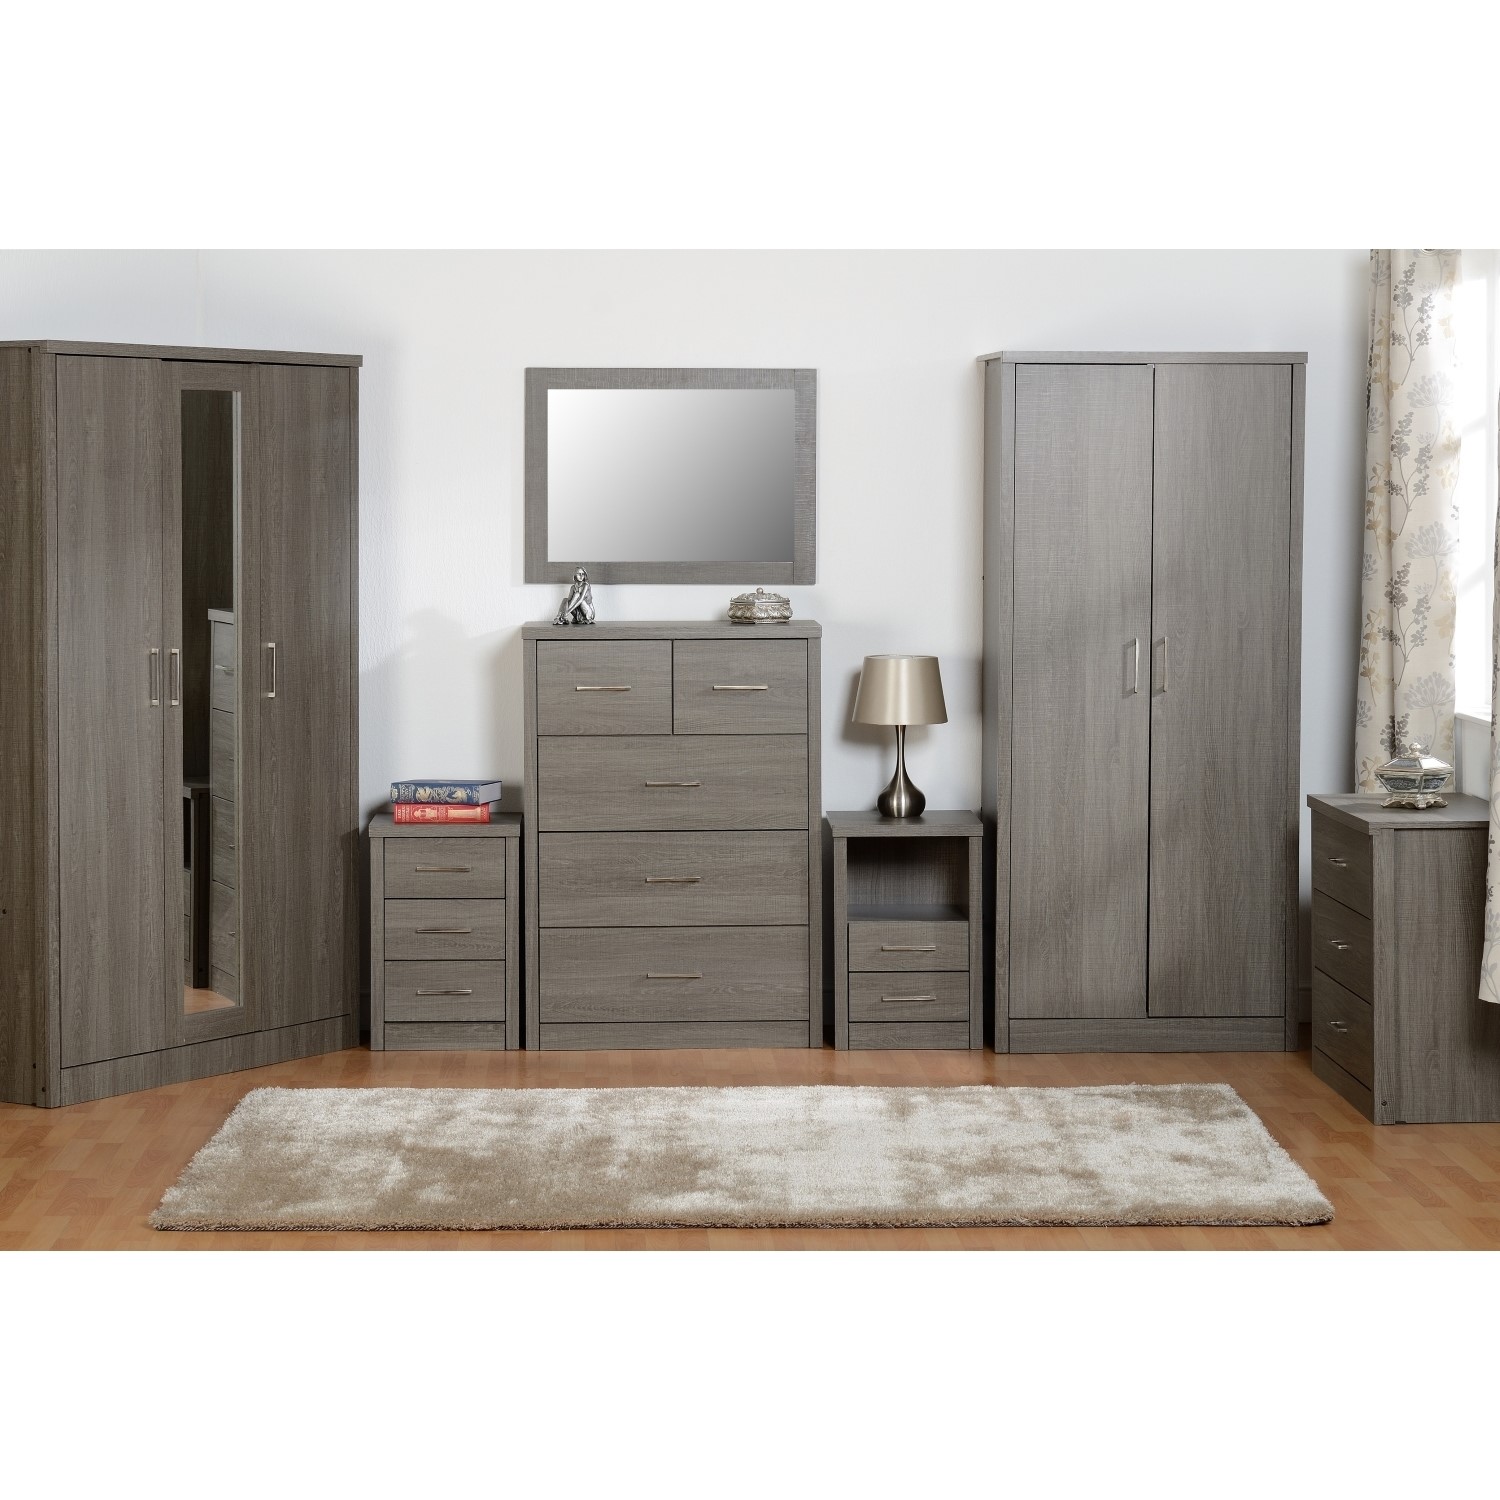 Seconique Lisbon Light Oak Bedroom Furniture Range Wardrobe Drawers & Bedside 